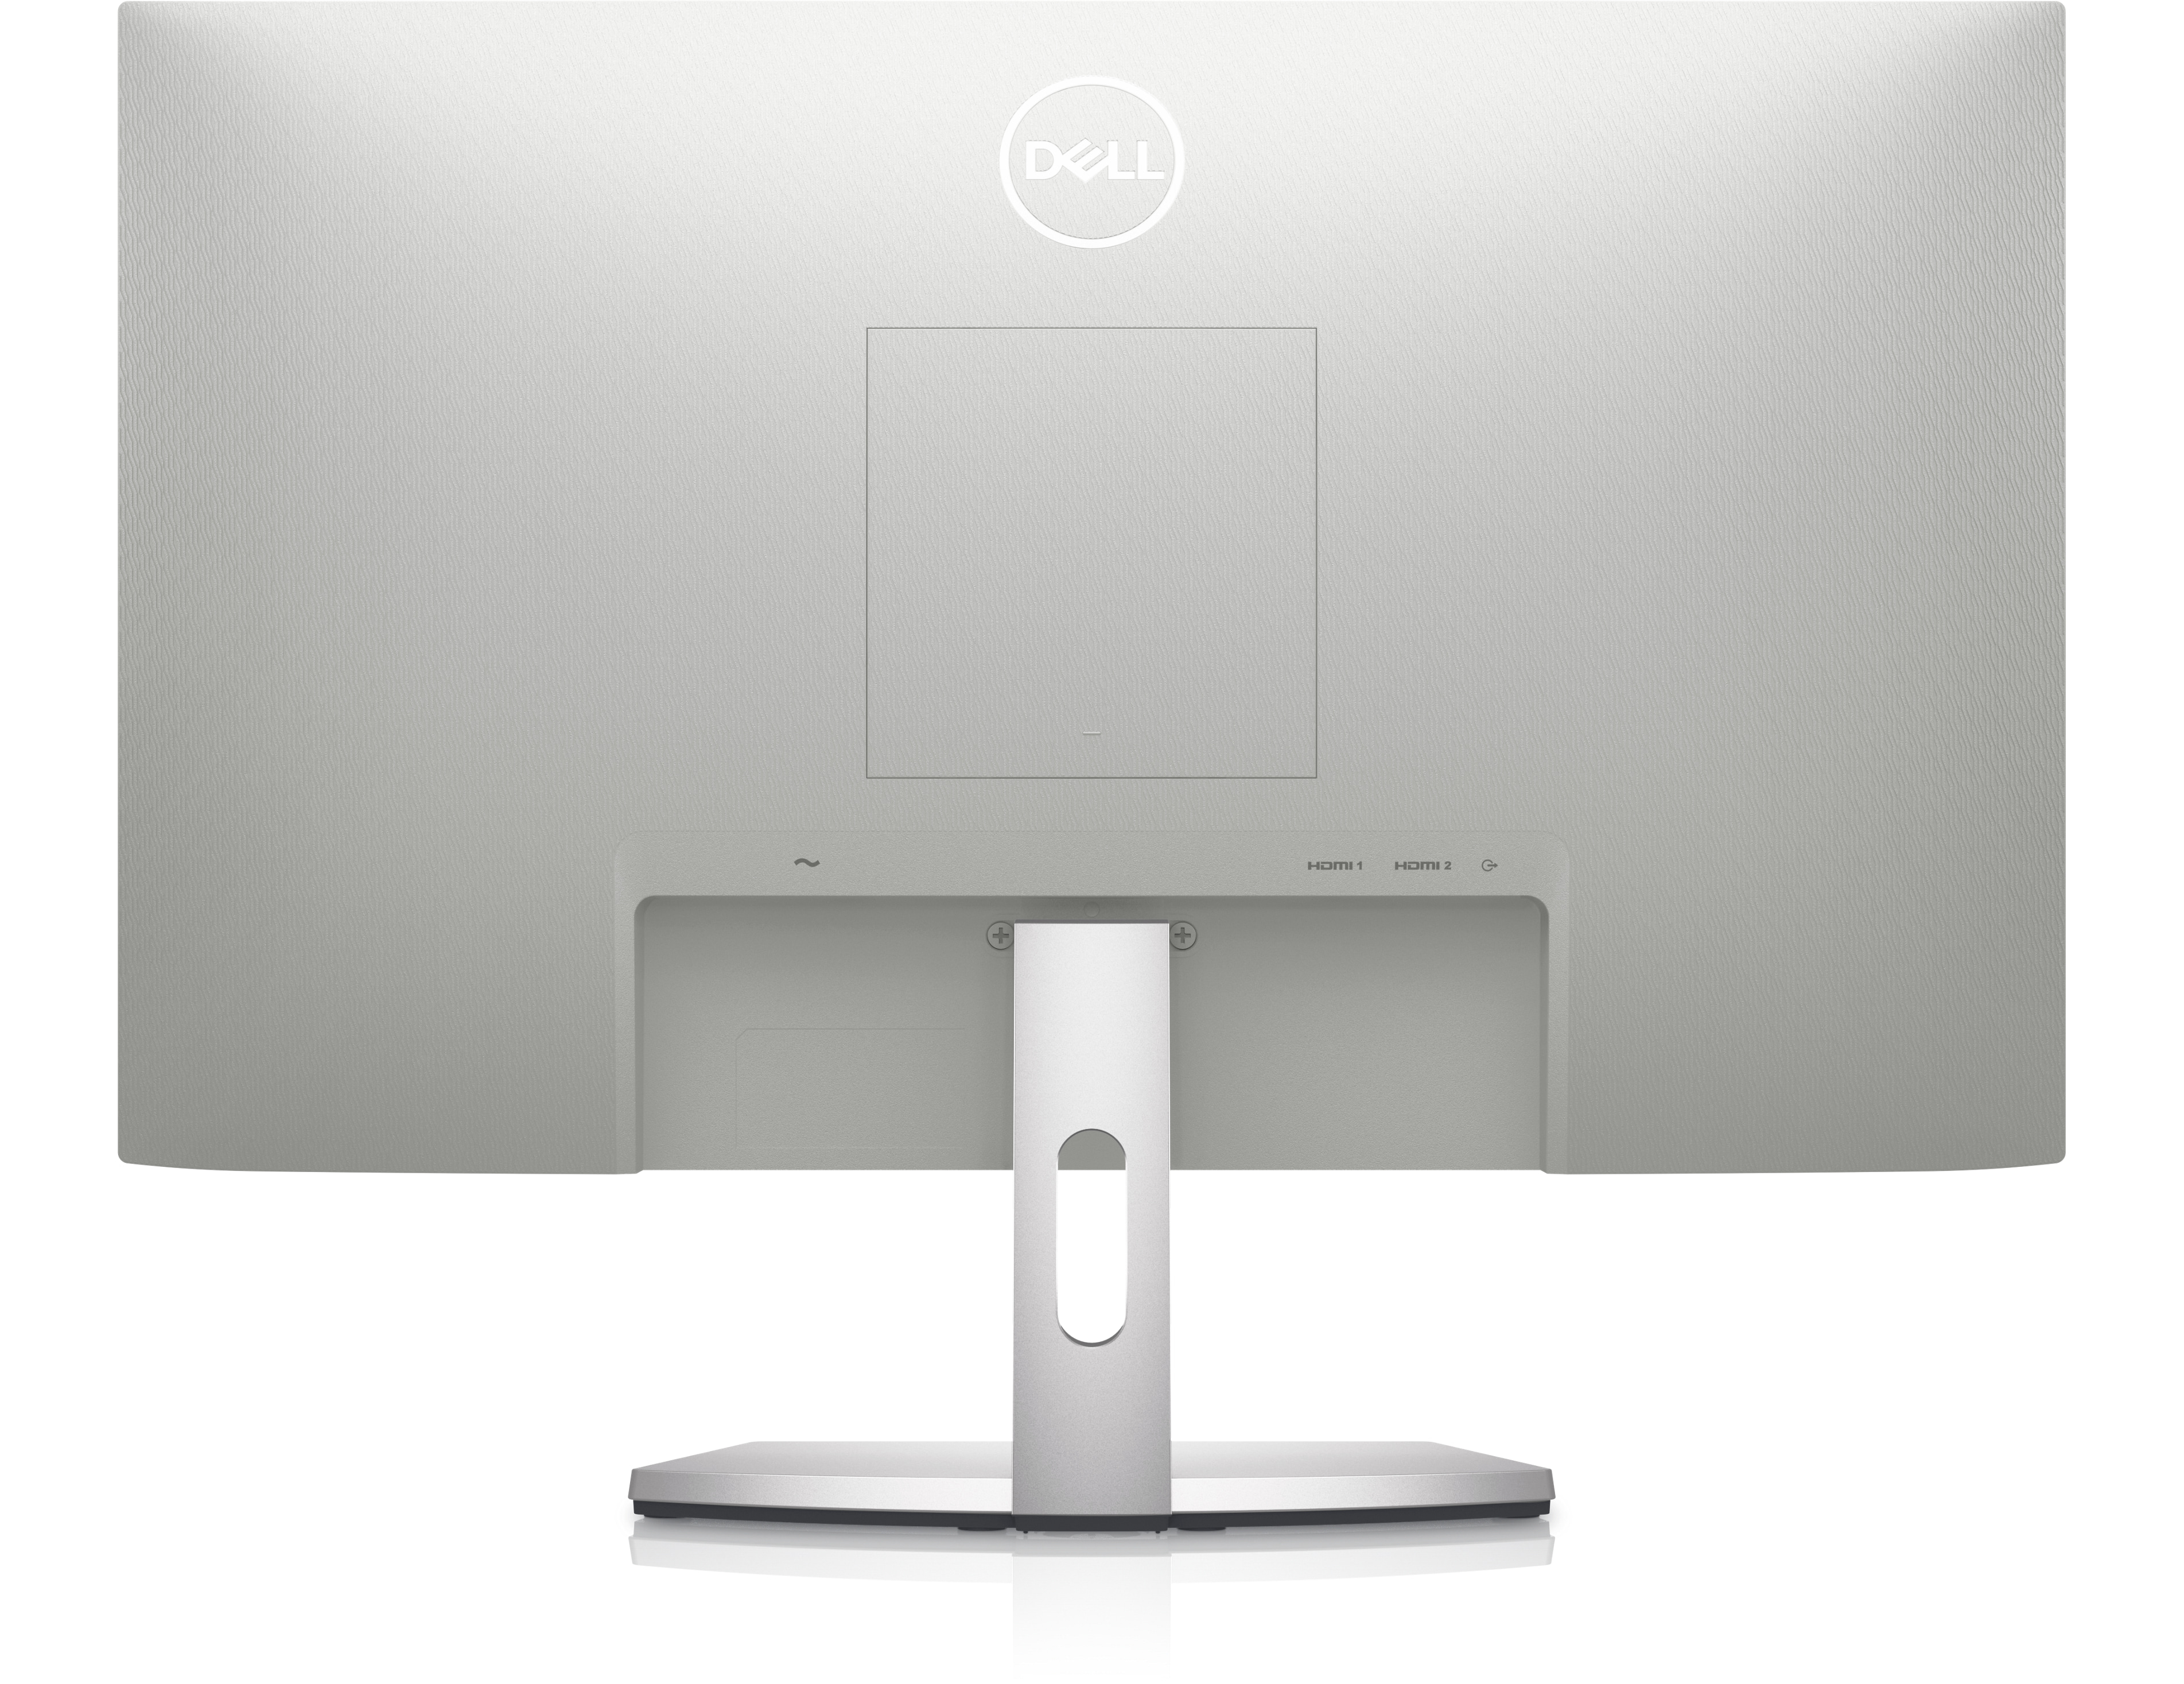 Dell 24 Monitor – S2421HN